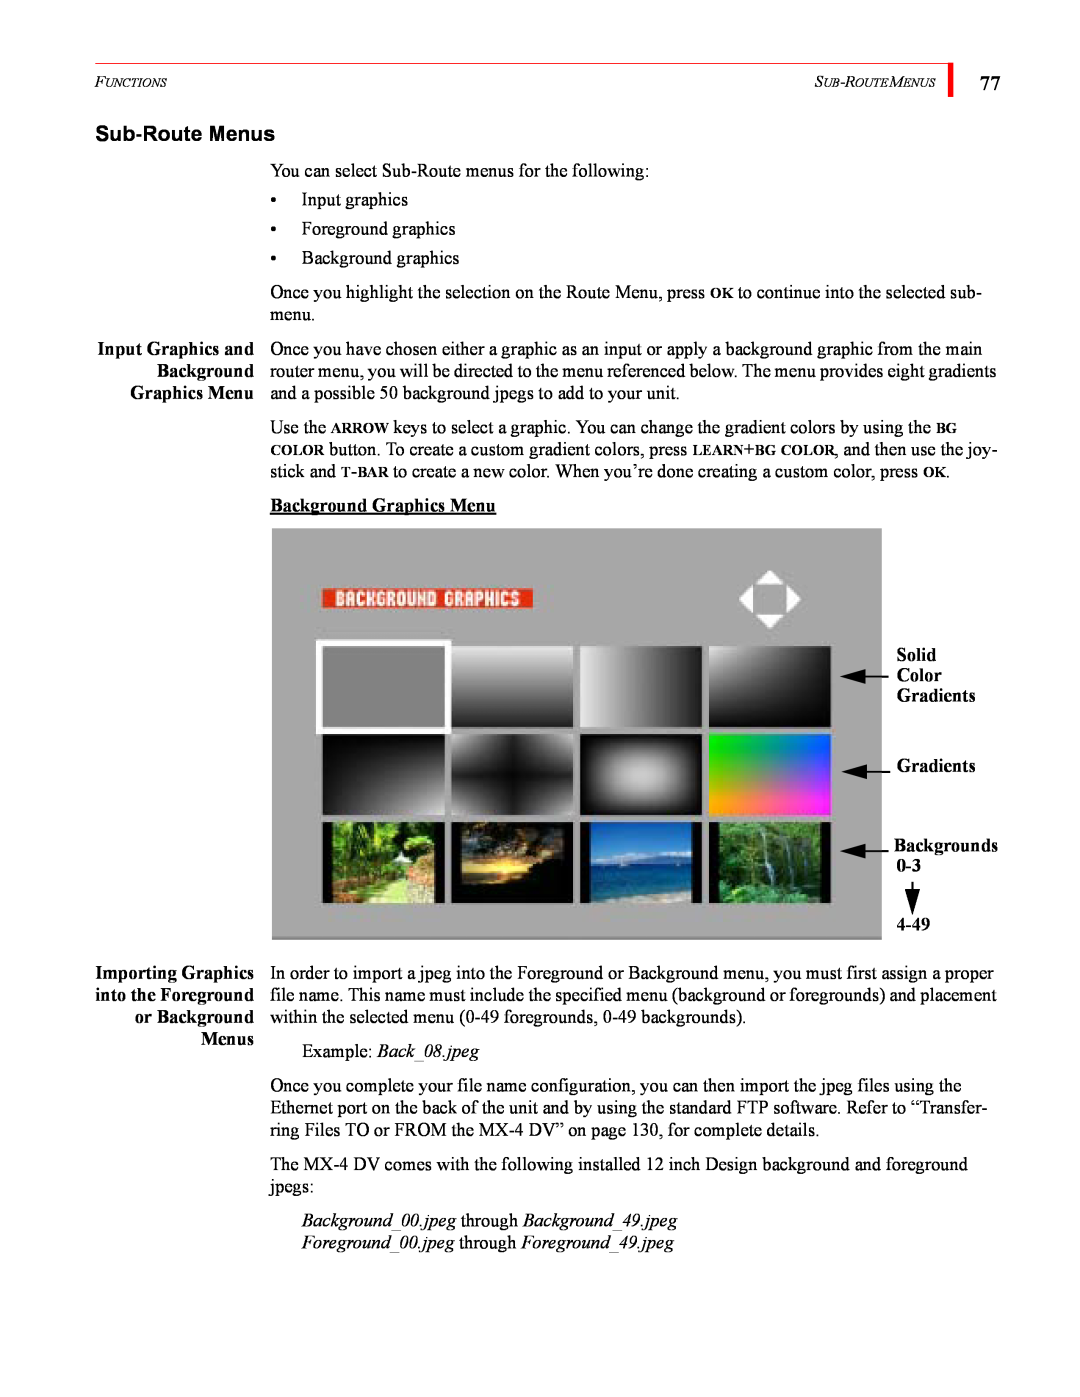 FOCUS Enhancements MX-4DV Sub-Route Menus, Background Graphics Menu Solid Color Gradients Gradients Backgrounds, 4-49 